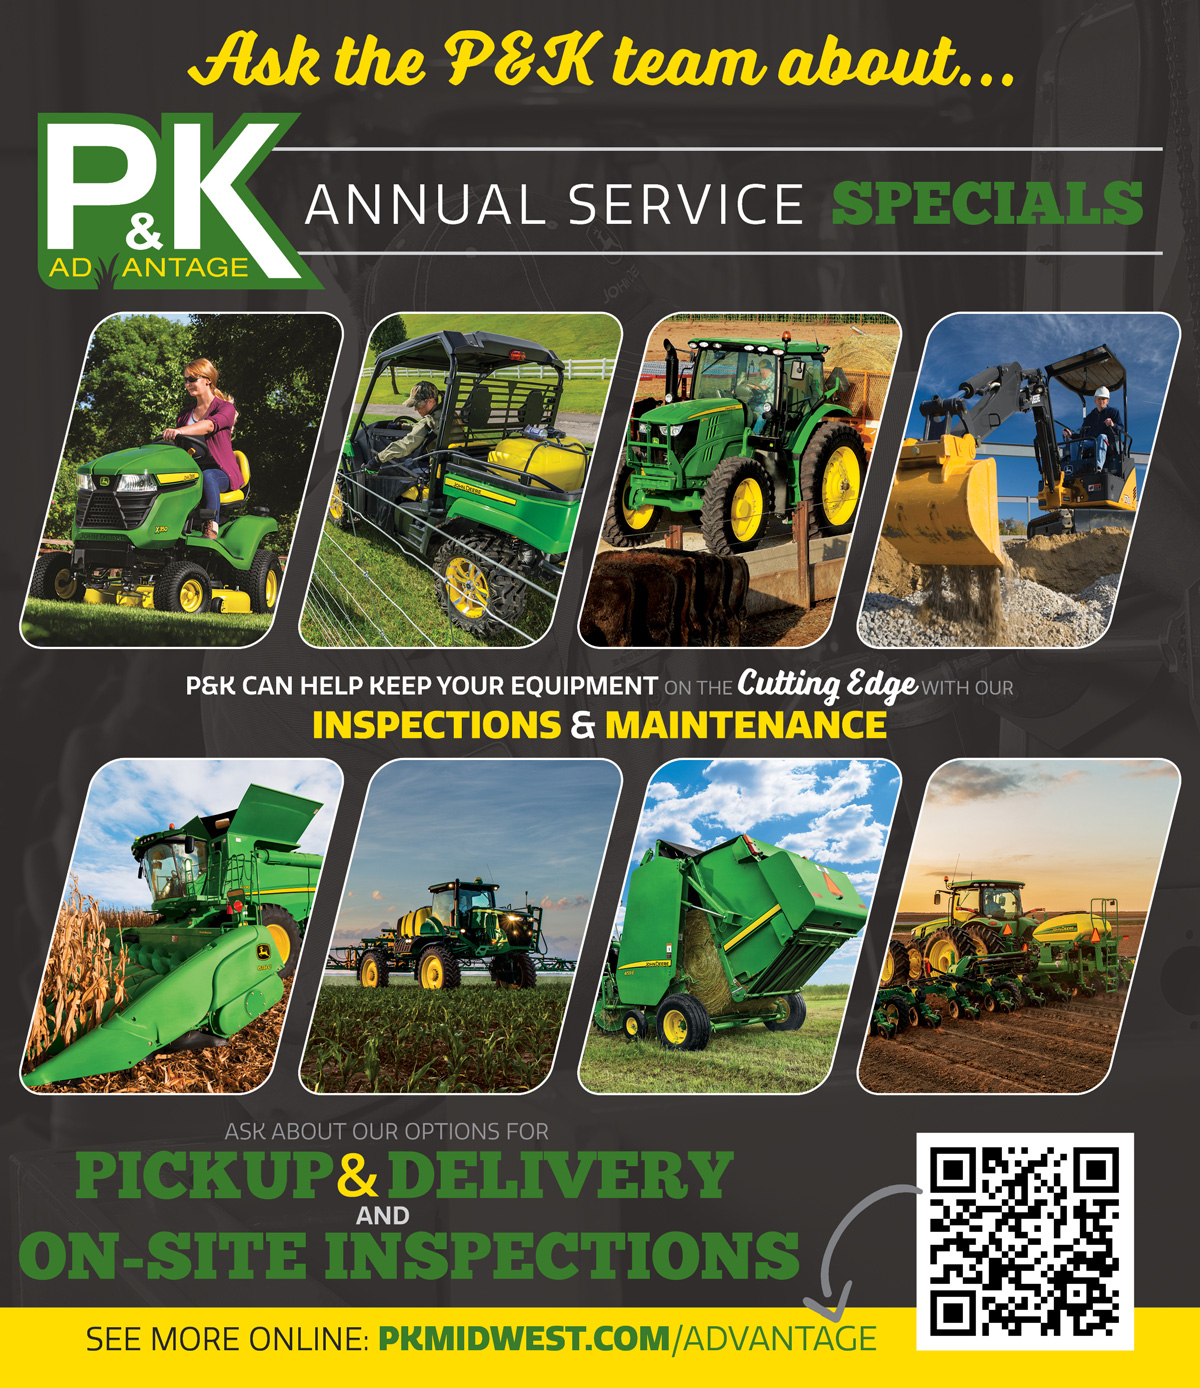 Schedule your P&K Advantage inspections & maintenance